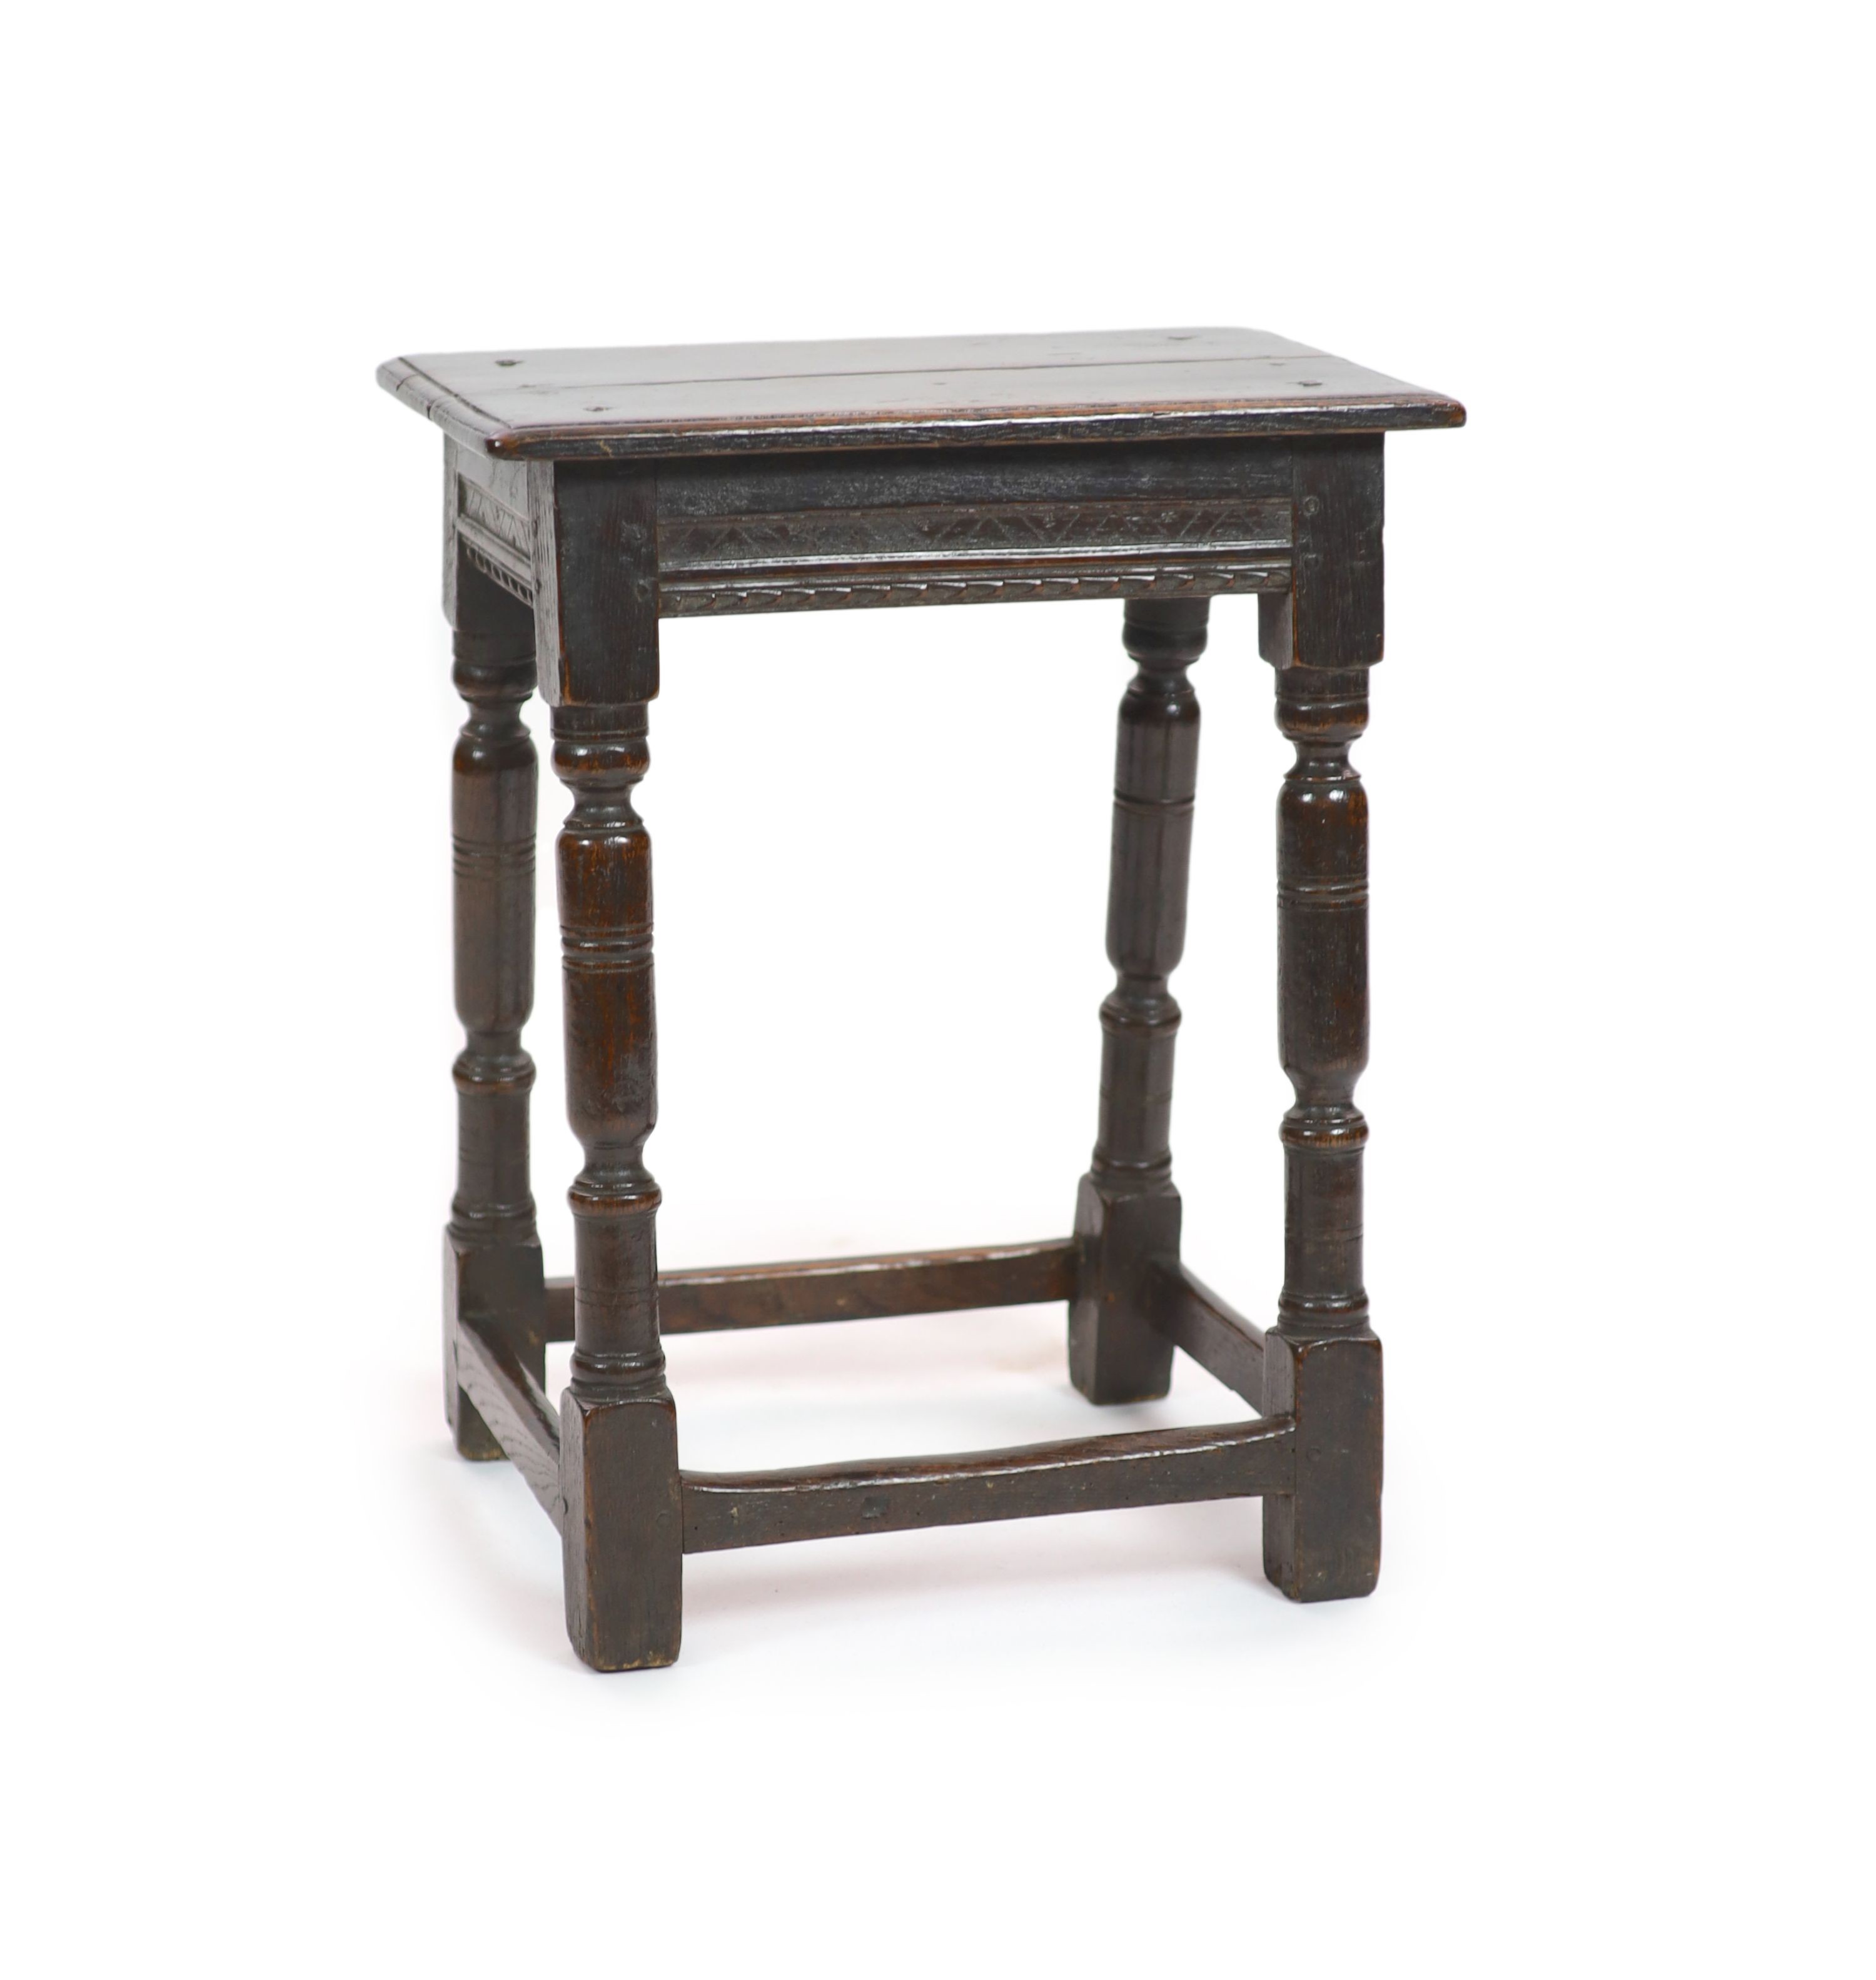 A mid-17th century oak joint stool H 58cm. W 47cm. D 28cm.